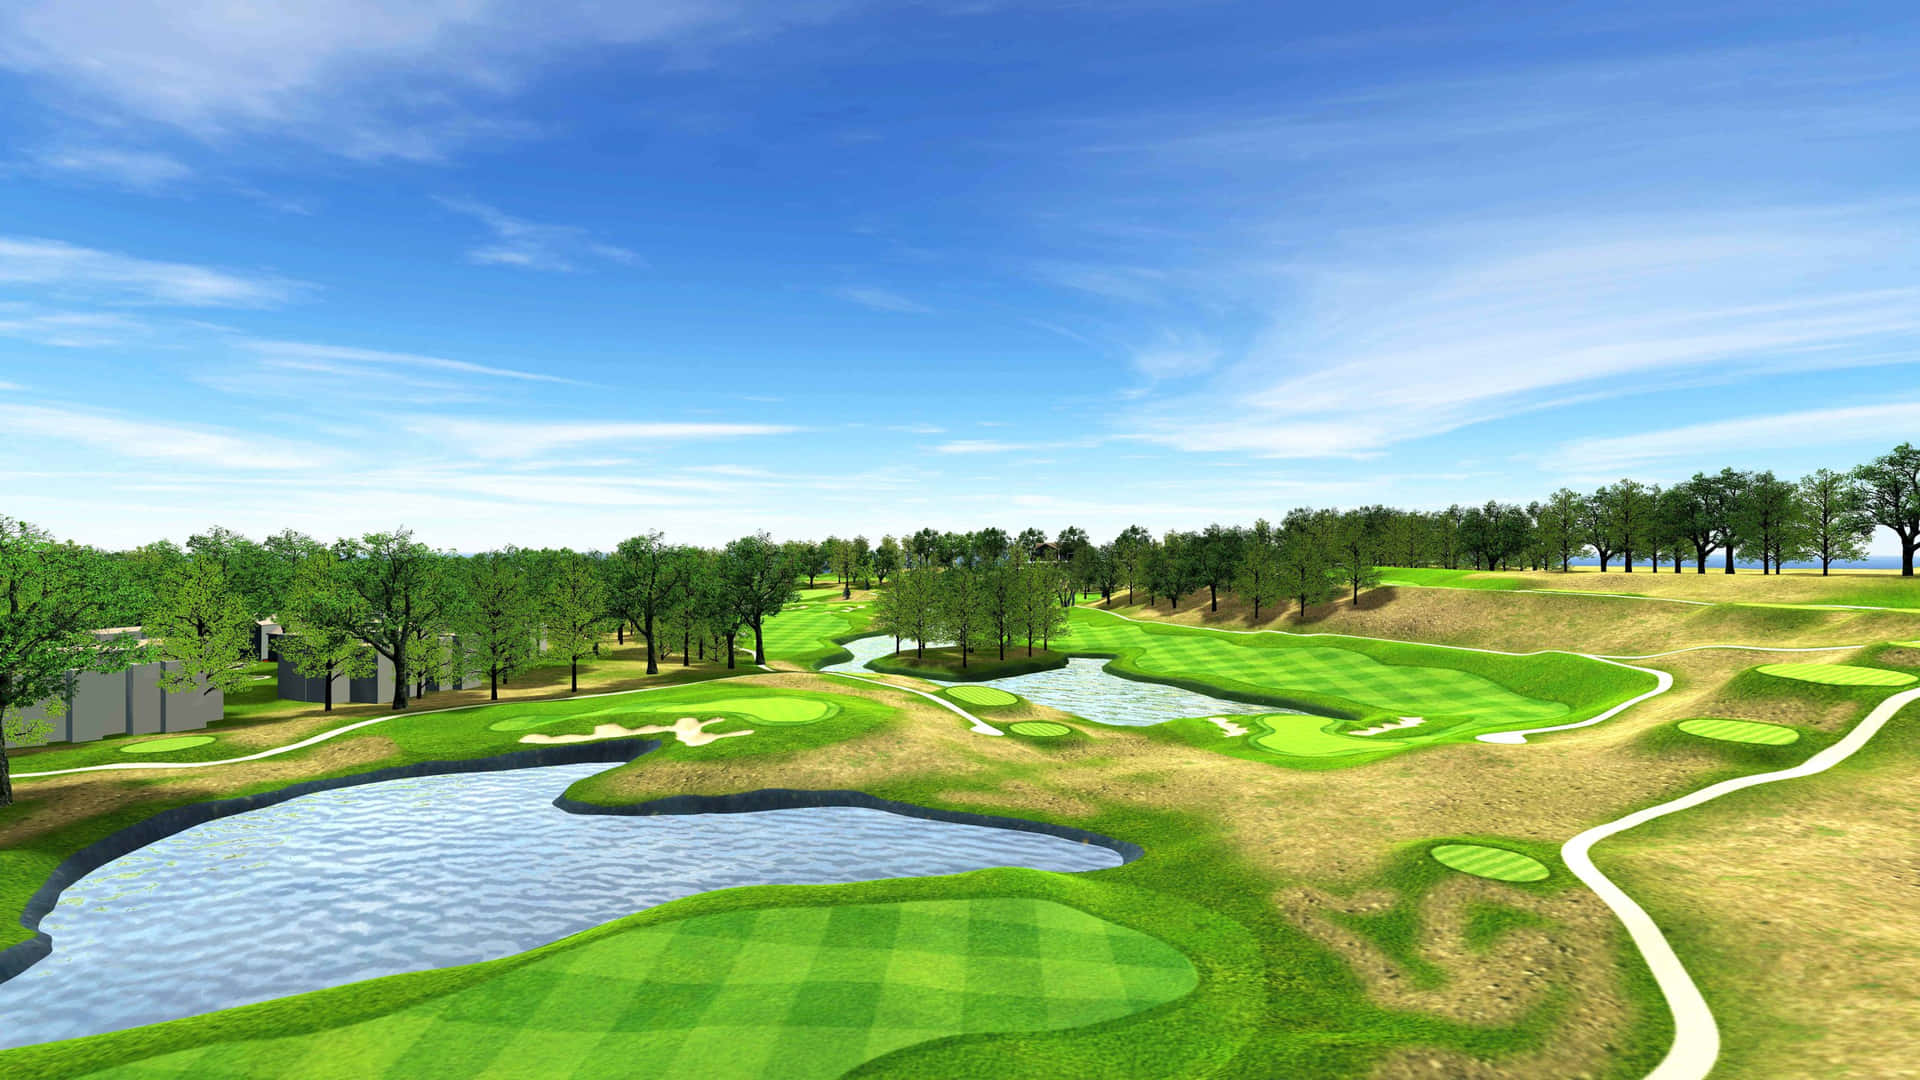 Bakgrundsbildtill Dataskärmen Med 3d-golfbanor Som Avbildar En Blå Himmel Och En Sjö. Wallpaper